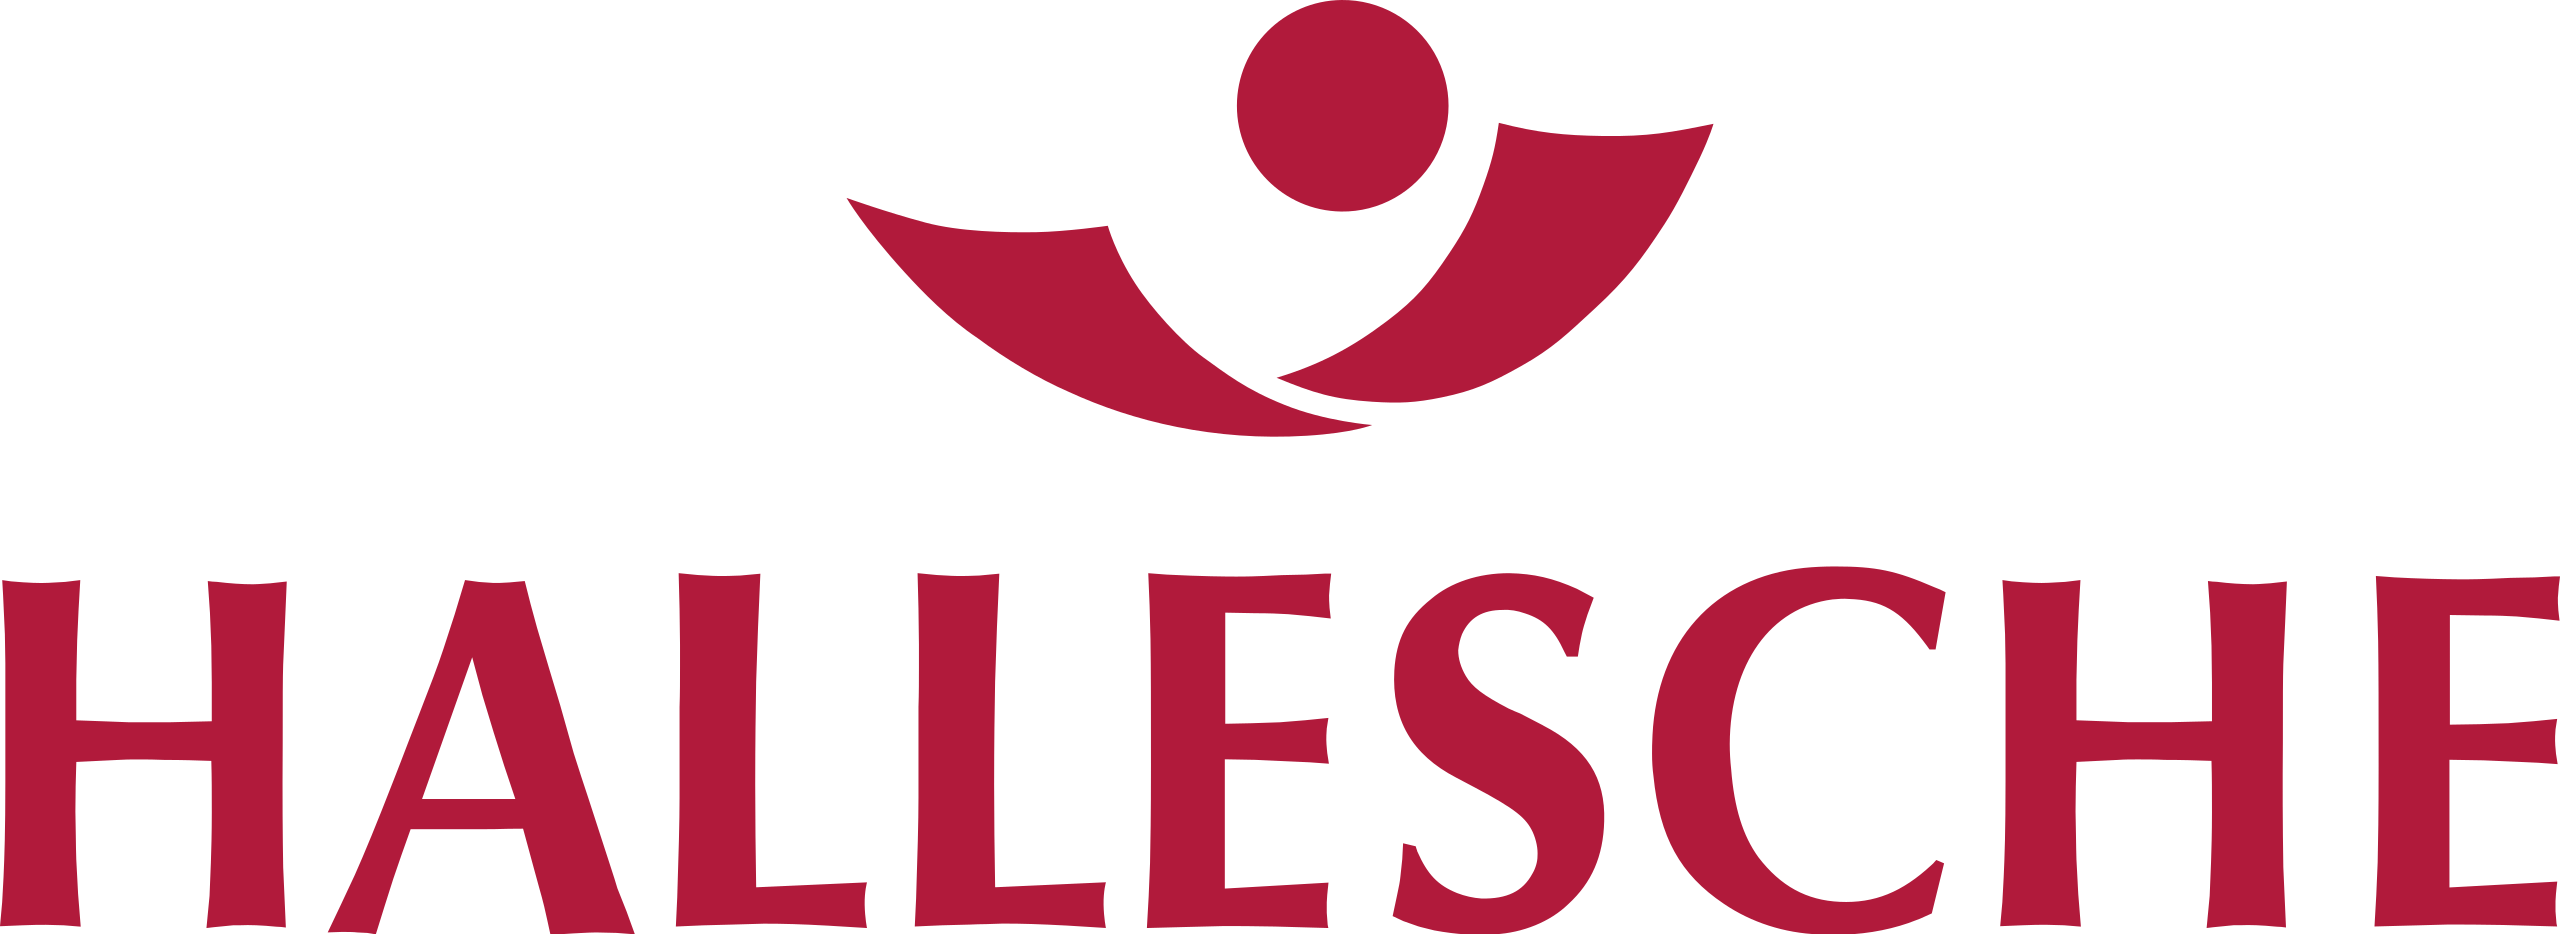 Hallesche Krankenversicherung Logo